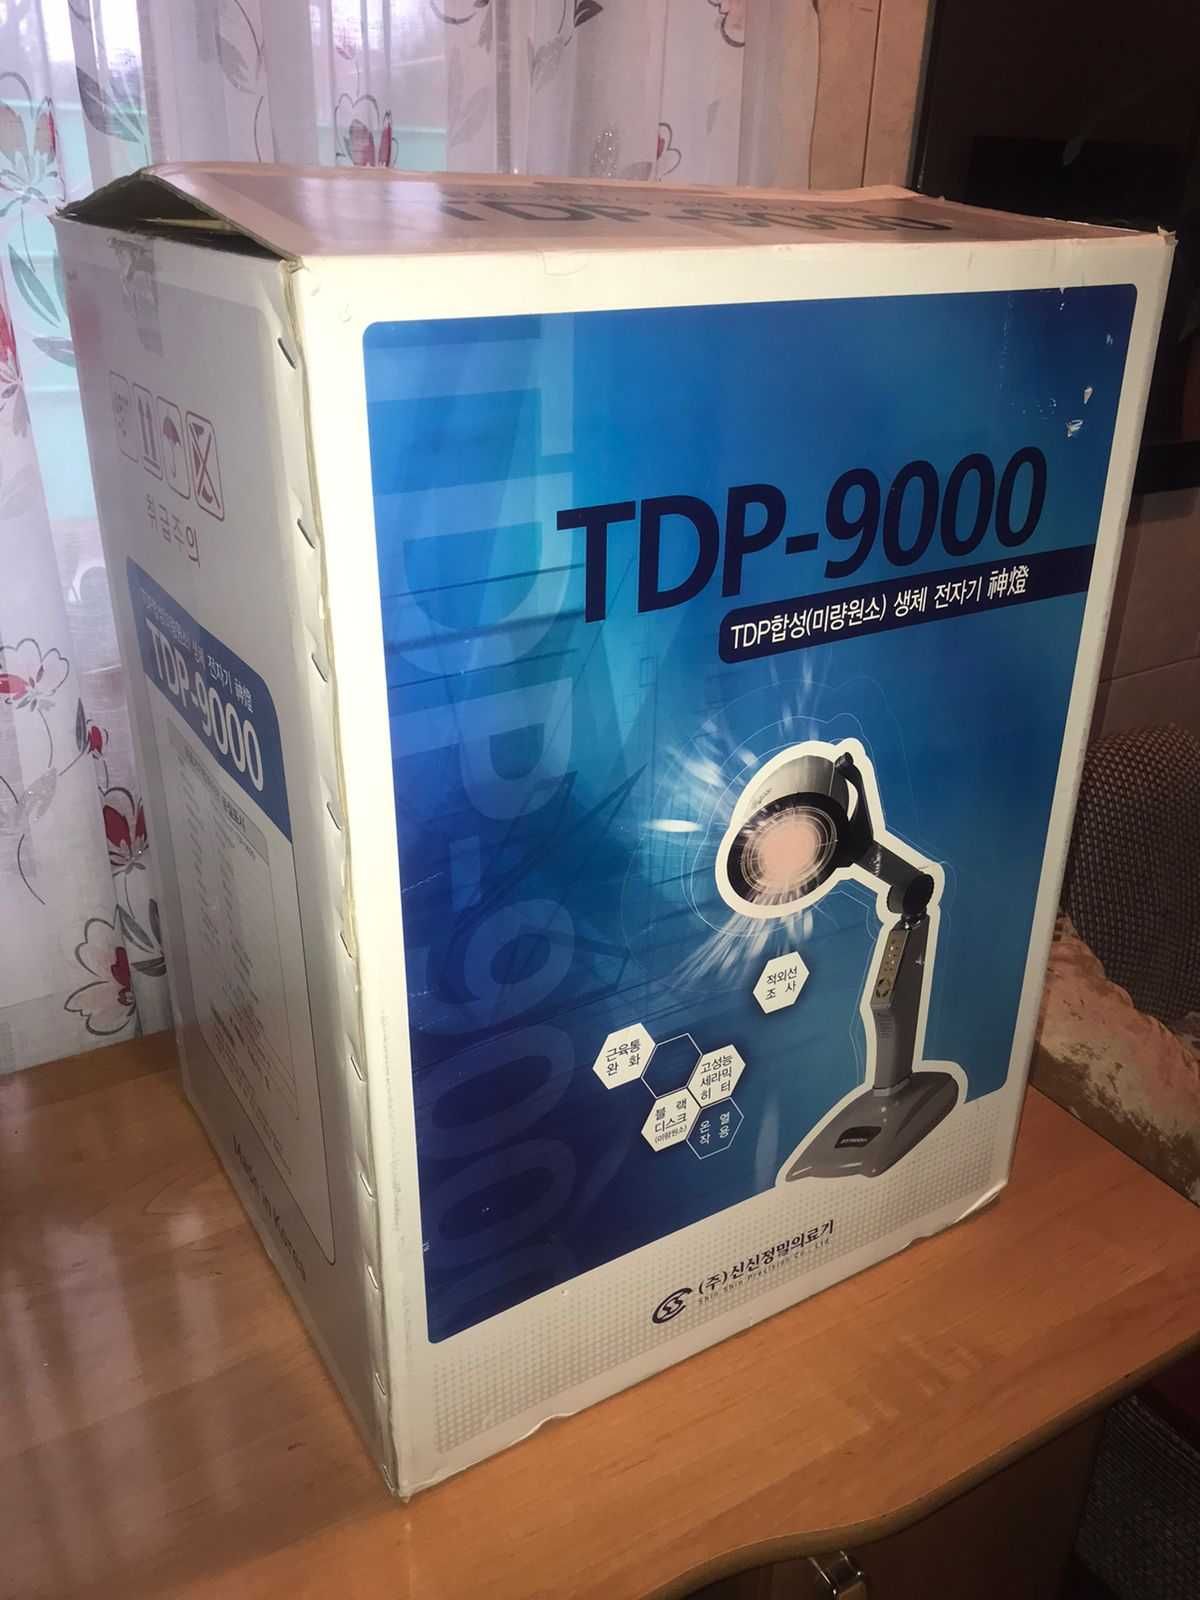 Инфракрасная лампа TDP - 9000 для лечения, реабилитации и физиотерапии